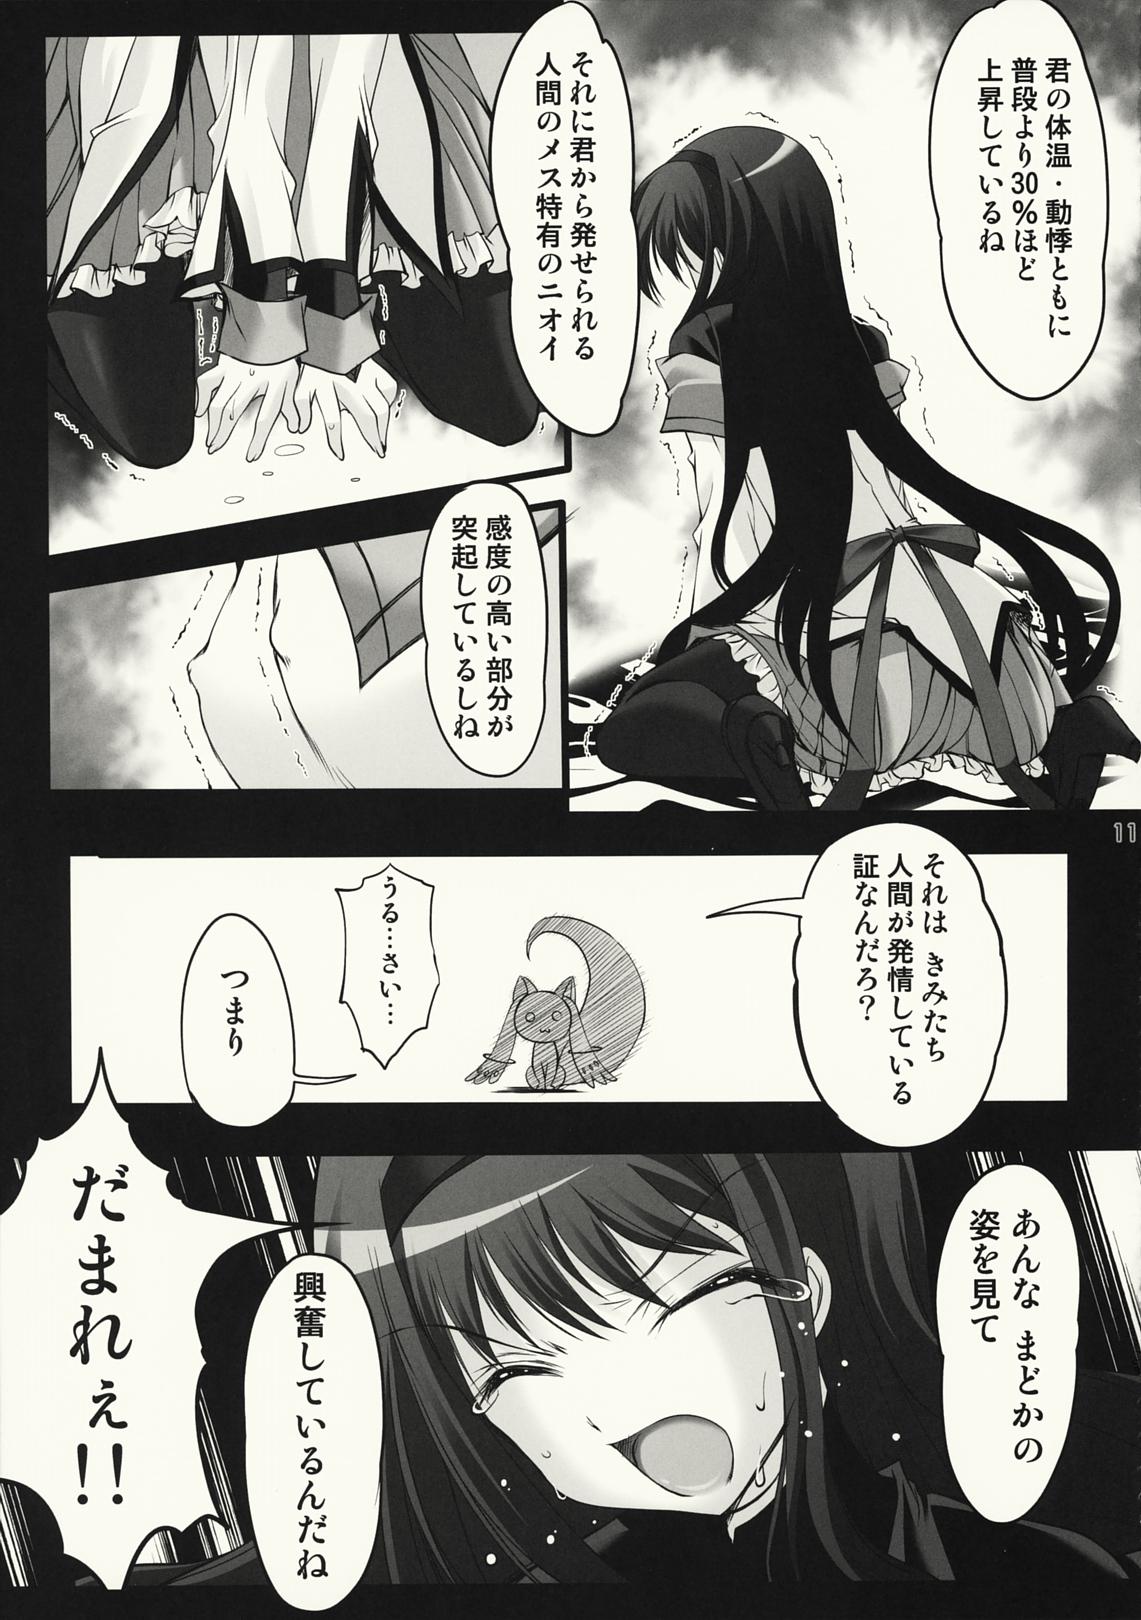 Bigdick Gishiki - Sacrifice - Puella magi madoka magica Hot Mom - Page 10